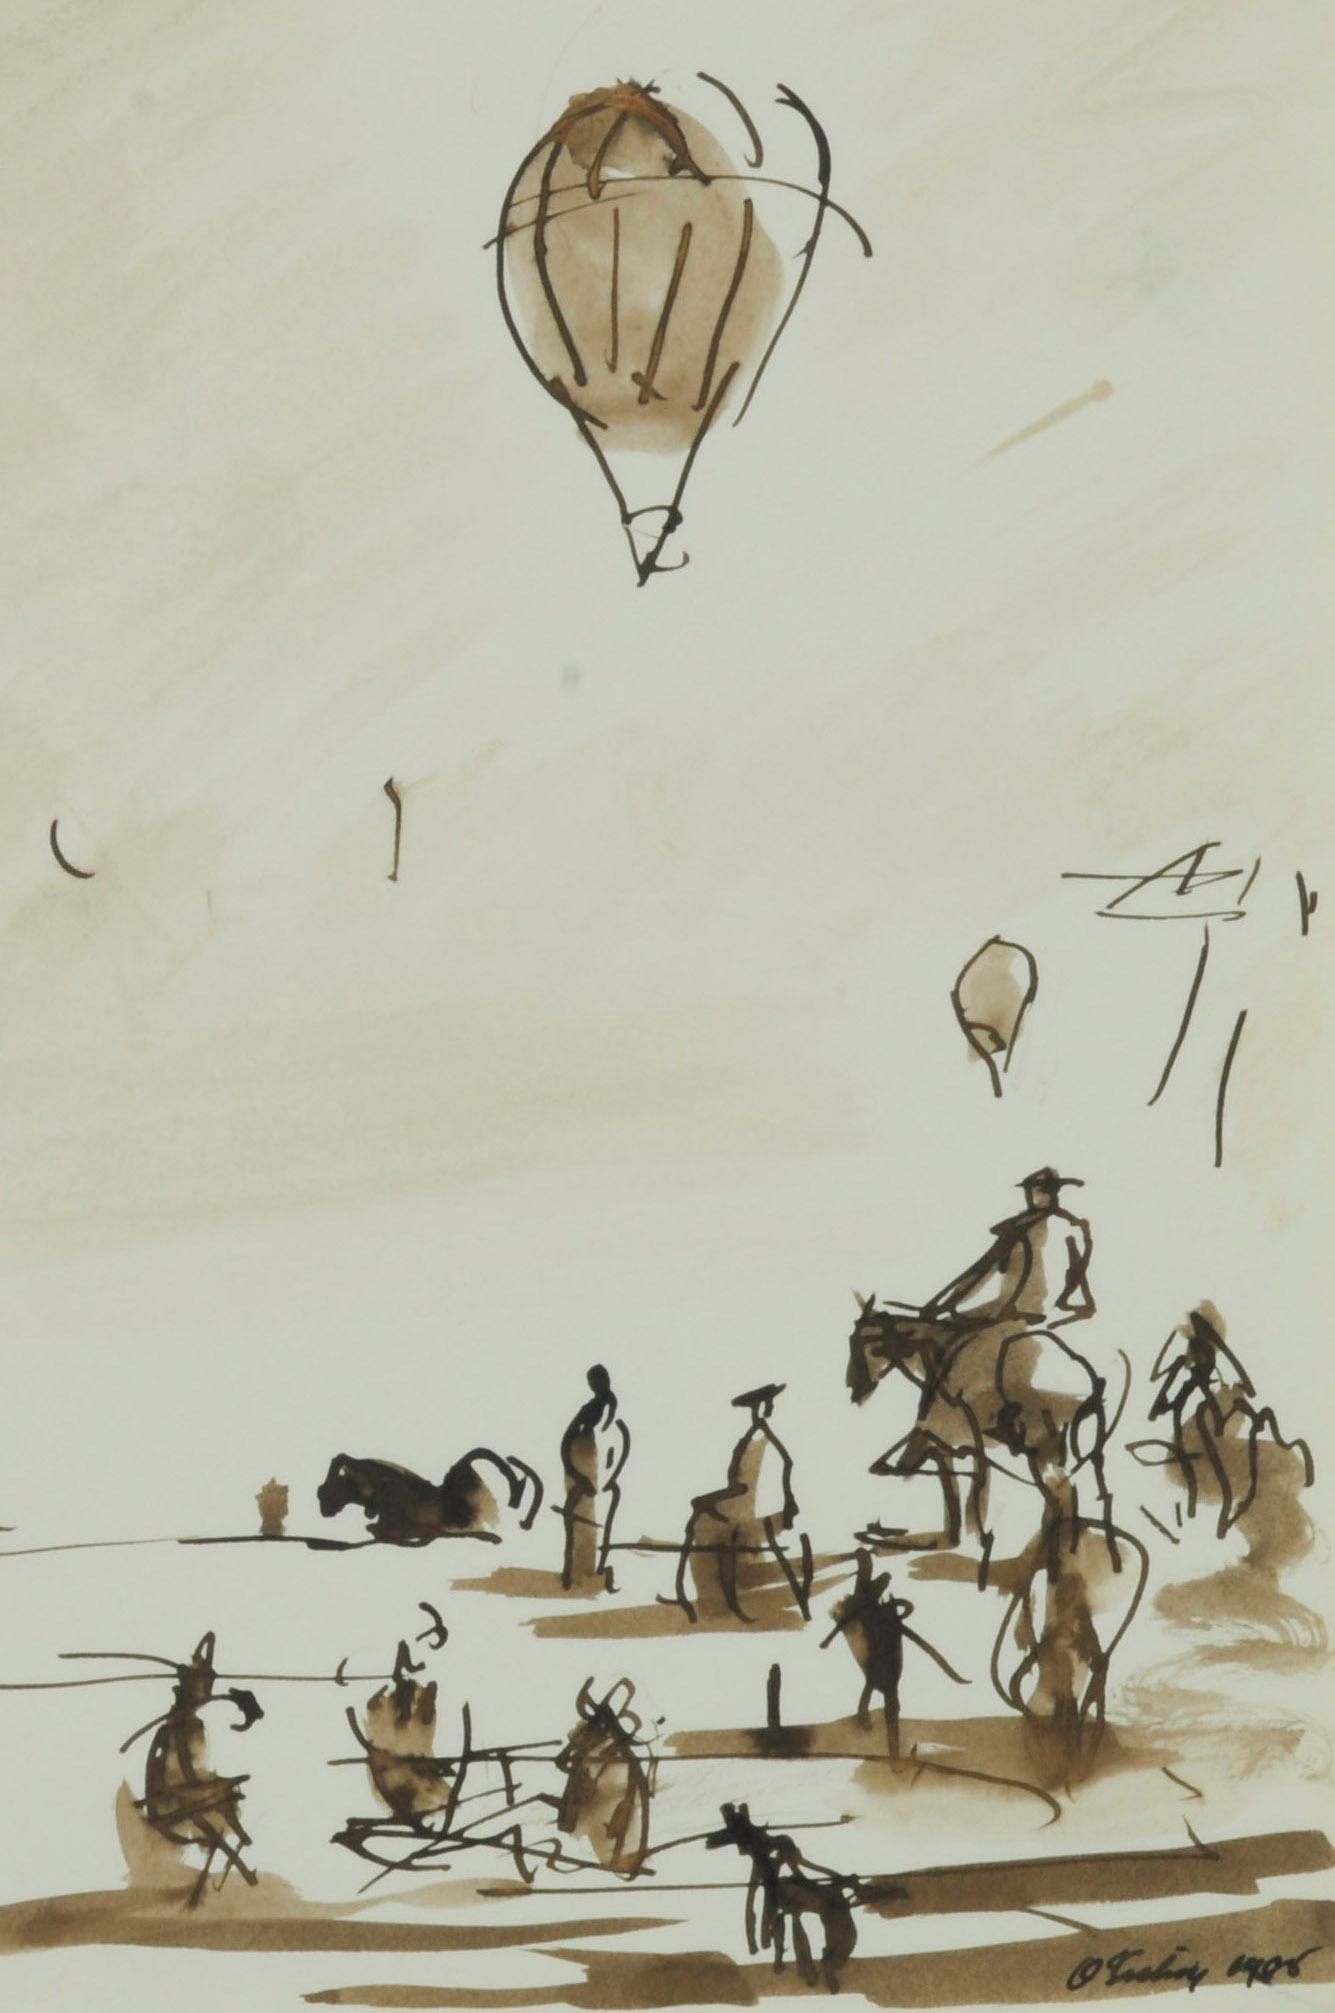 Sans titre (Montée en montgolfière et spectateurs)
Lavis sépia sur papier vélin, 1985
Signé et daté à l'encre dans le coin inférieur droit
Extrait du carnet de croquis de l'artiste datant de 1985
Probablement une vue de Cape Cod, réalisée lors d'une